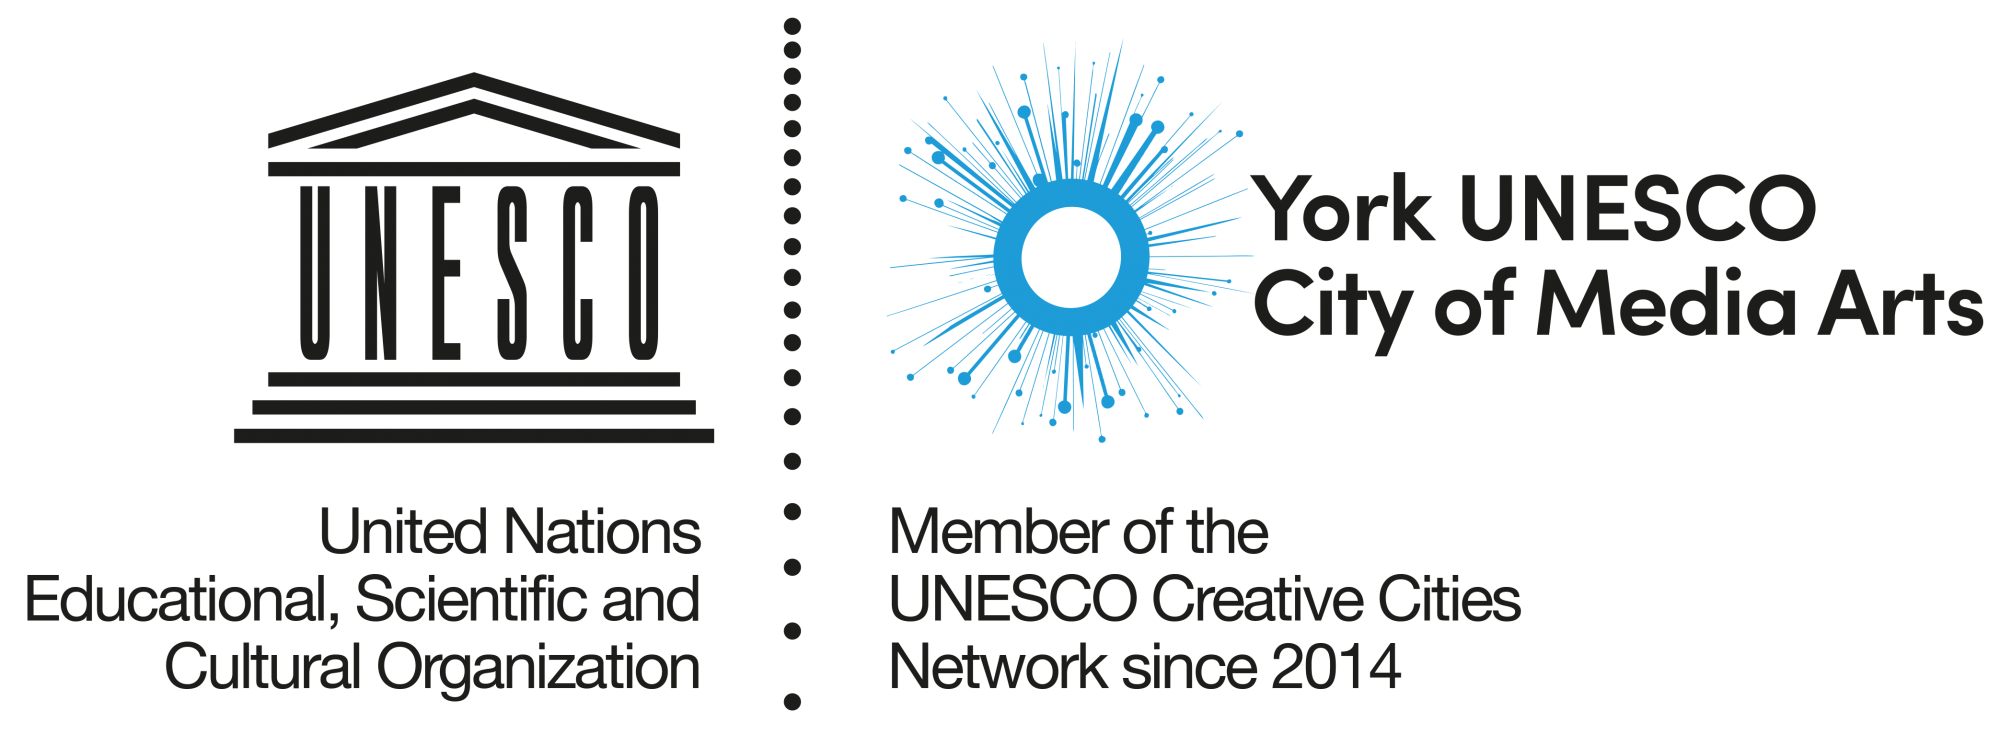 UNESCO York City of Media Arts